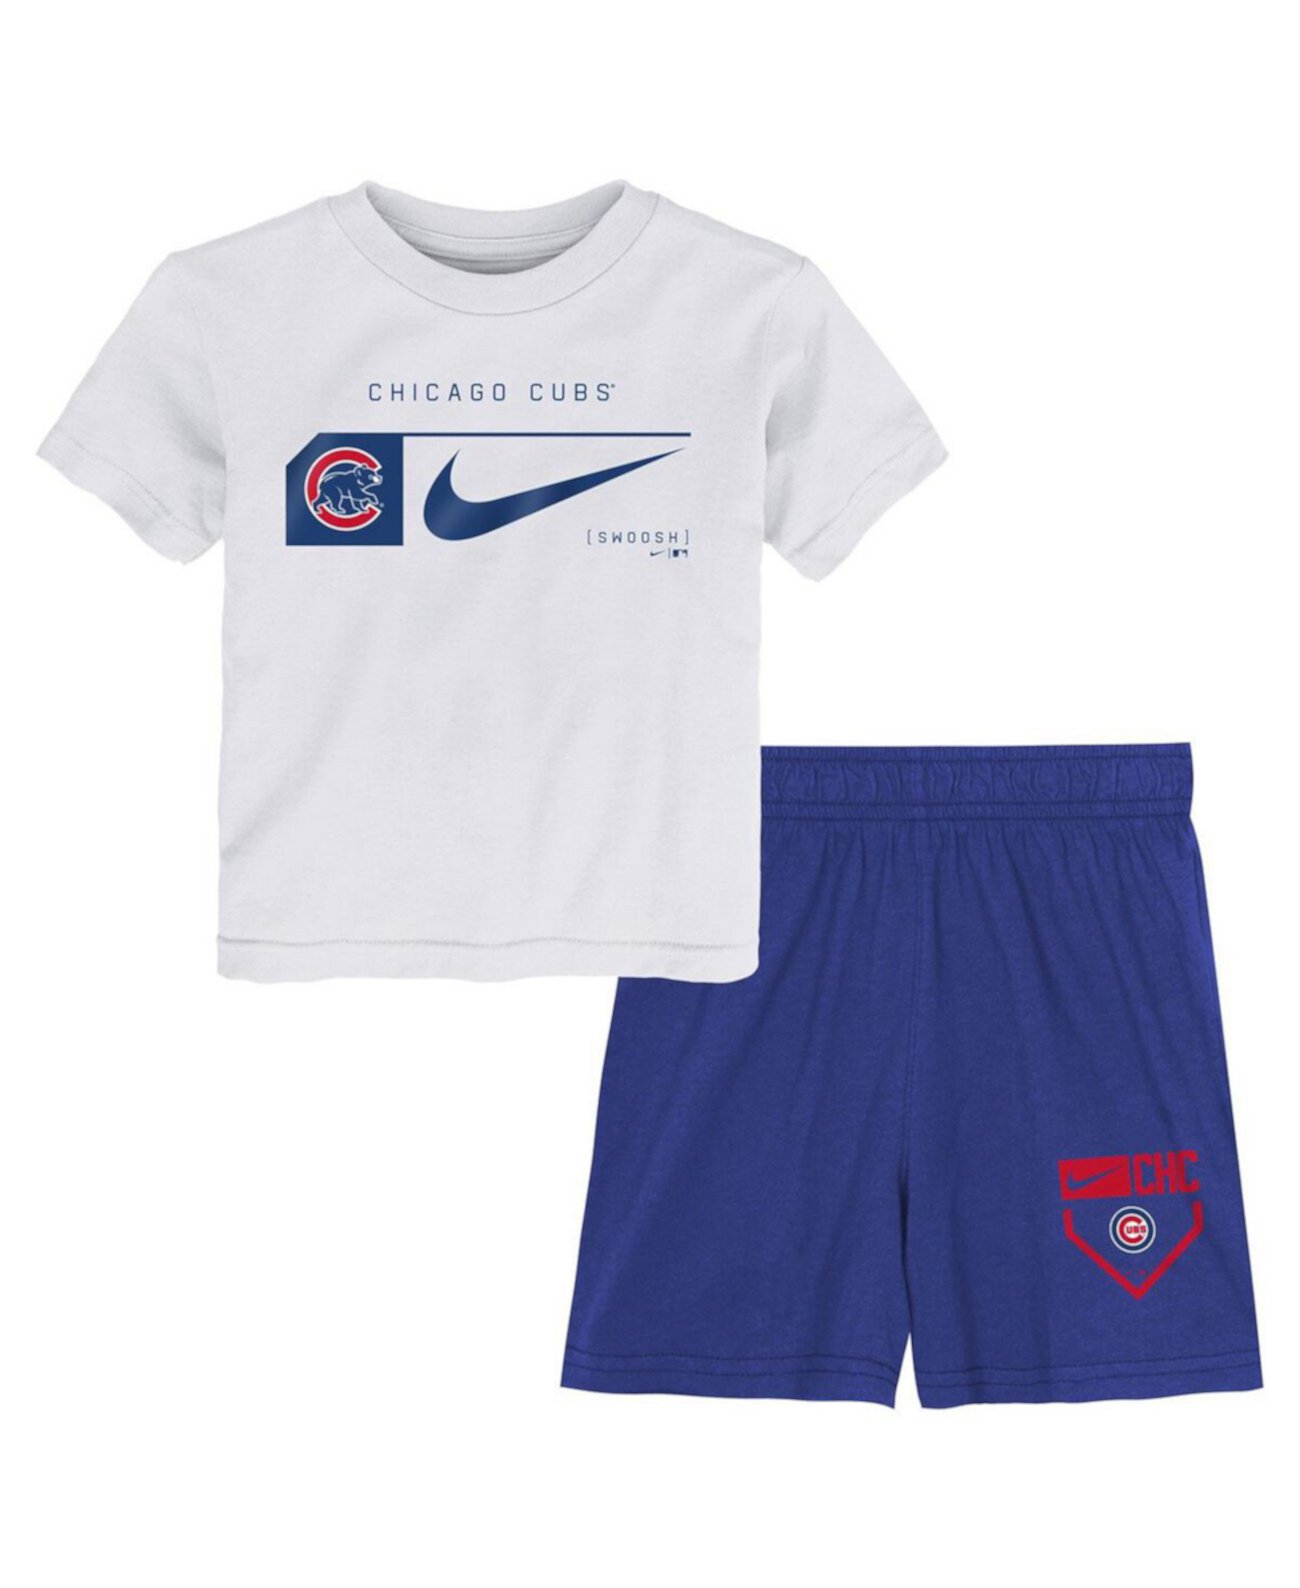 Детский комплект одежды Nike Белый/Синий Chicago Cubs из двух предметов Nike